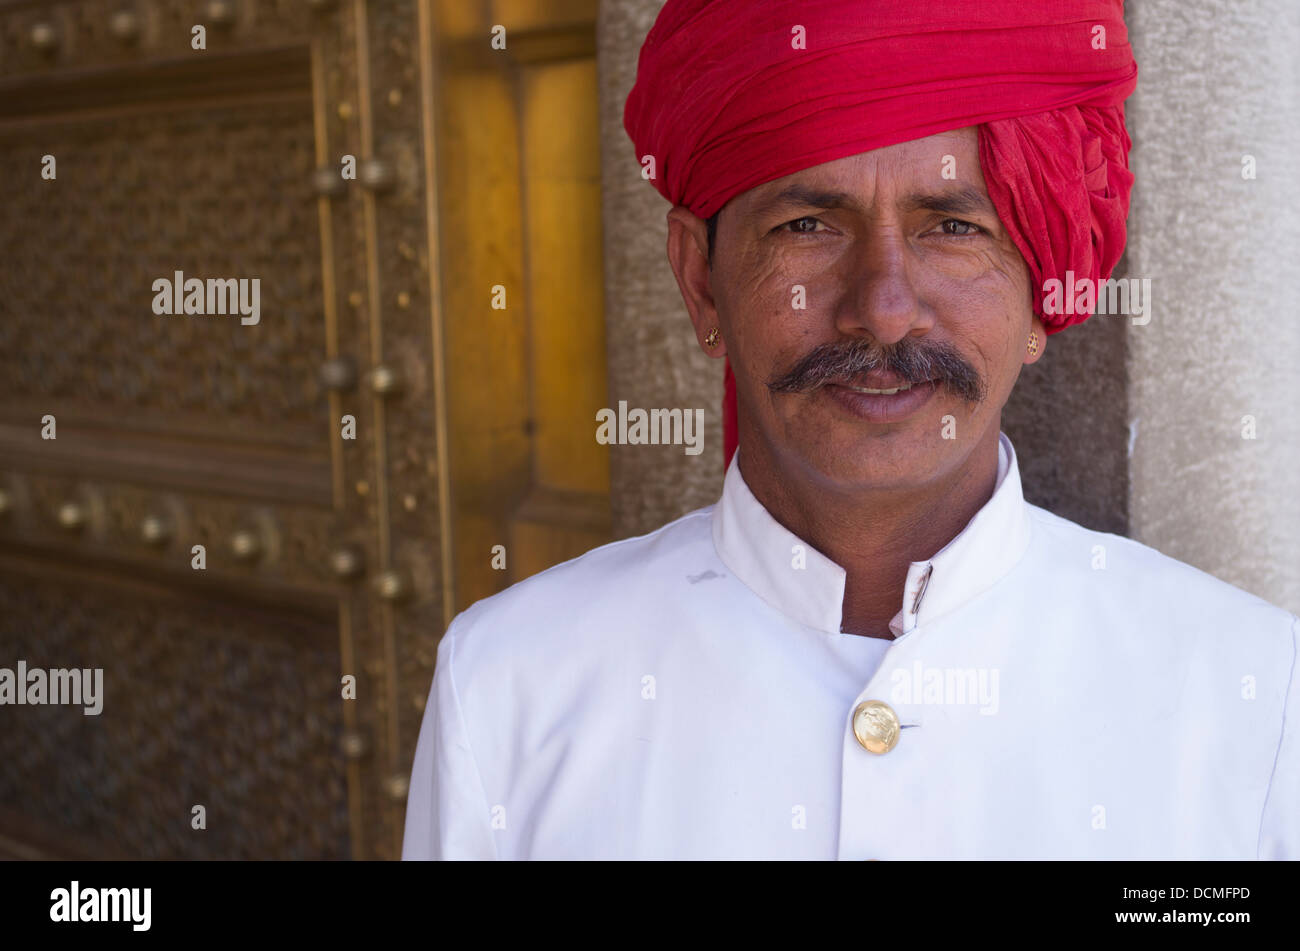 Protector de indios con turbante rojo en el Palacio de la ciudad - Jaipur, Rajasthan, India Foto de stock